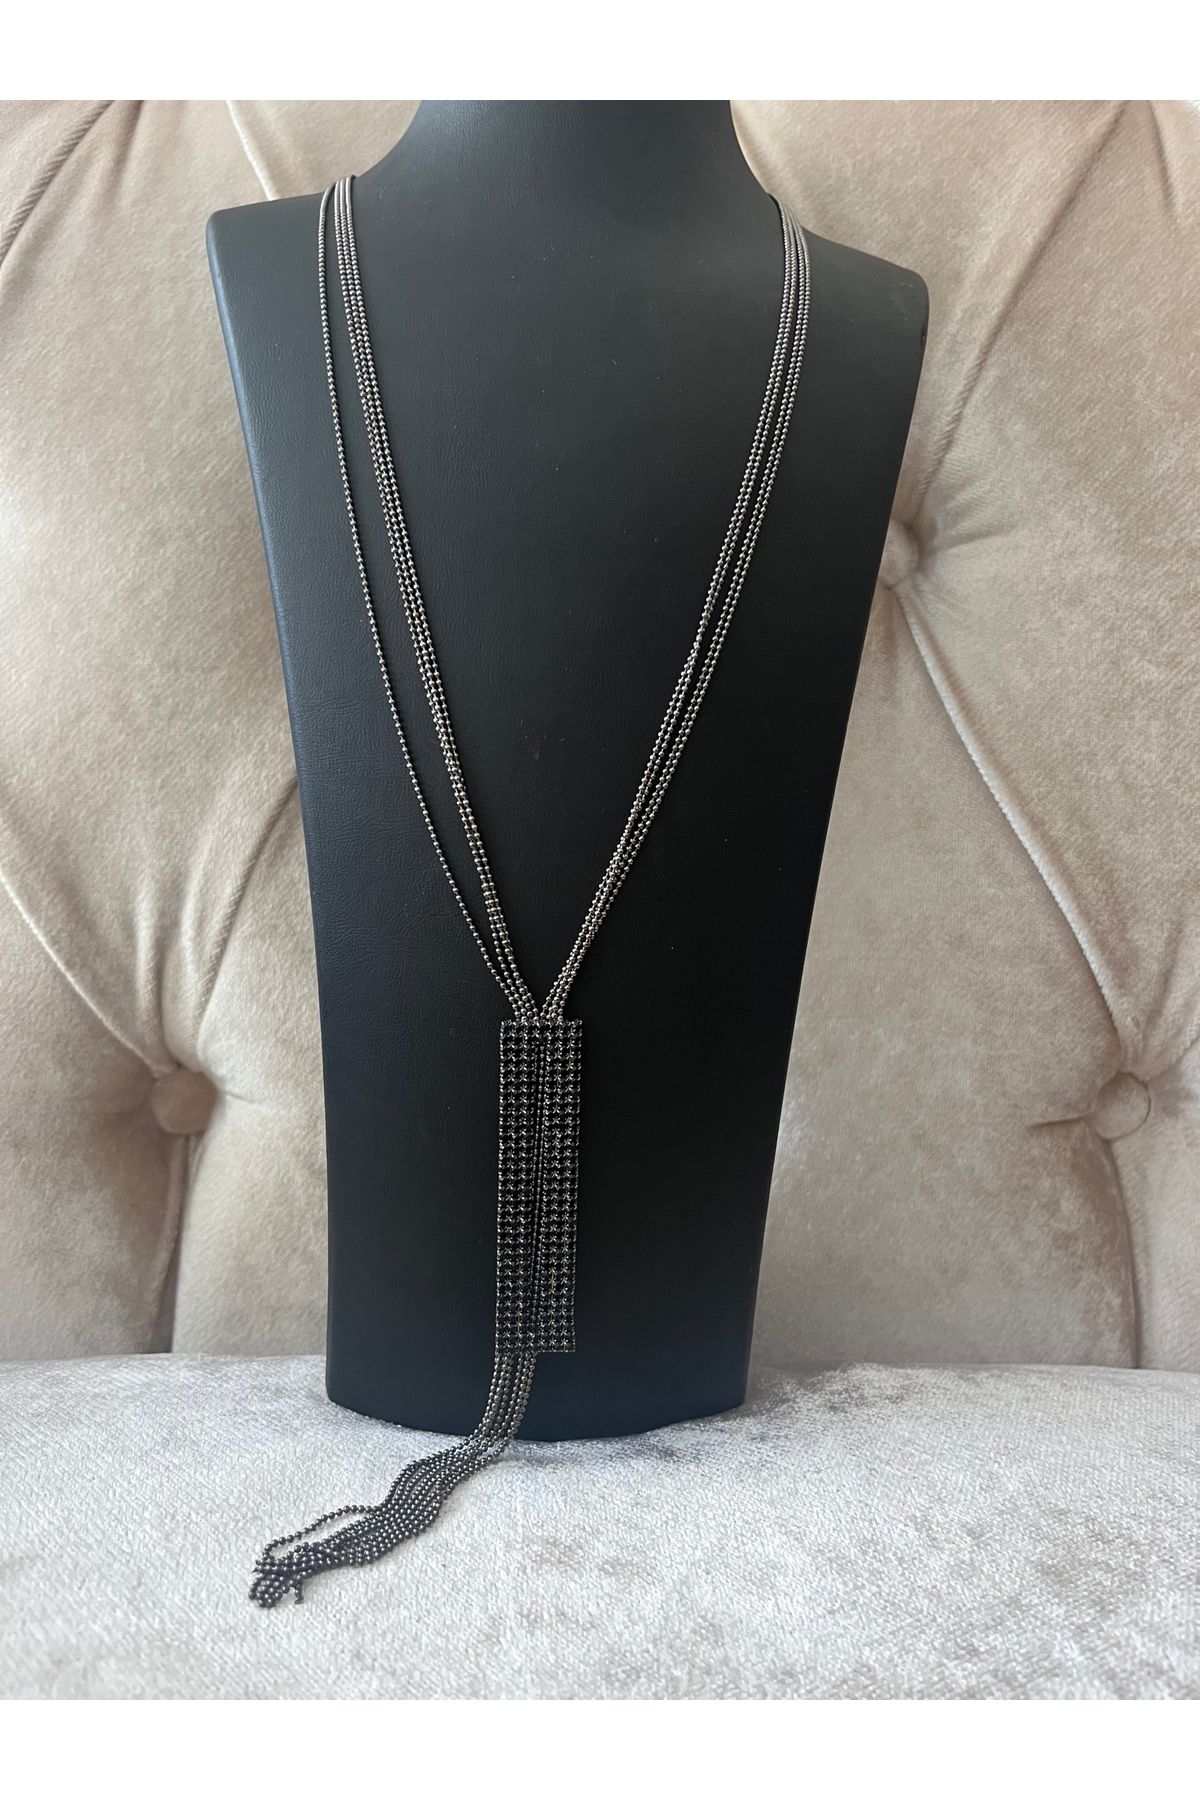 COCOSH TAKI Siyah renk zirkon taşlı püskül model abiye özel tasarım uzun çoklu kolye